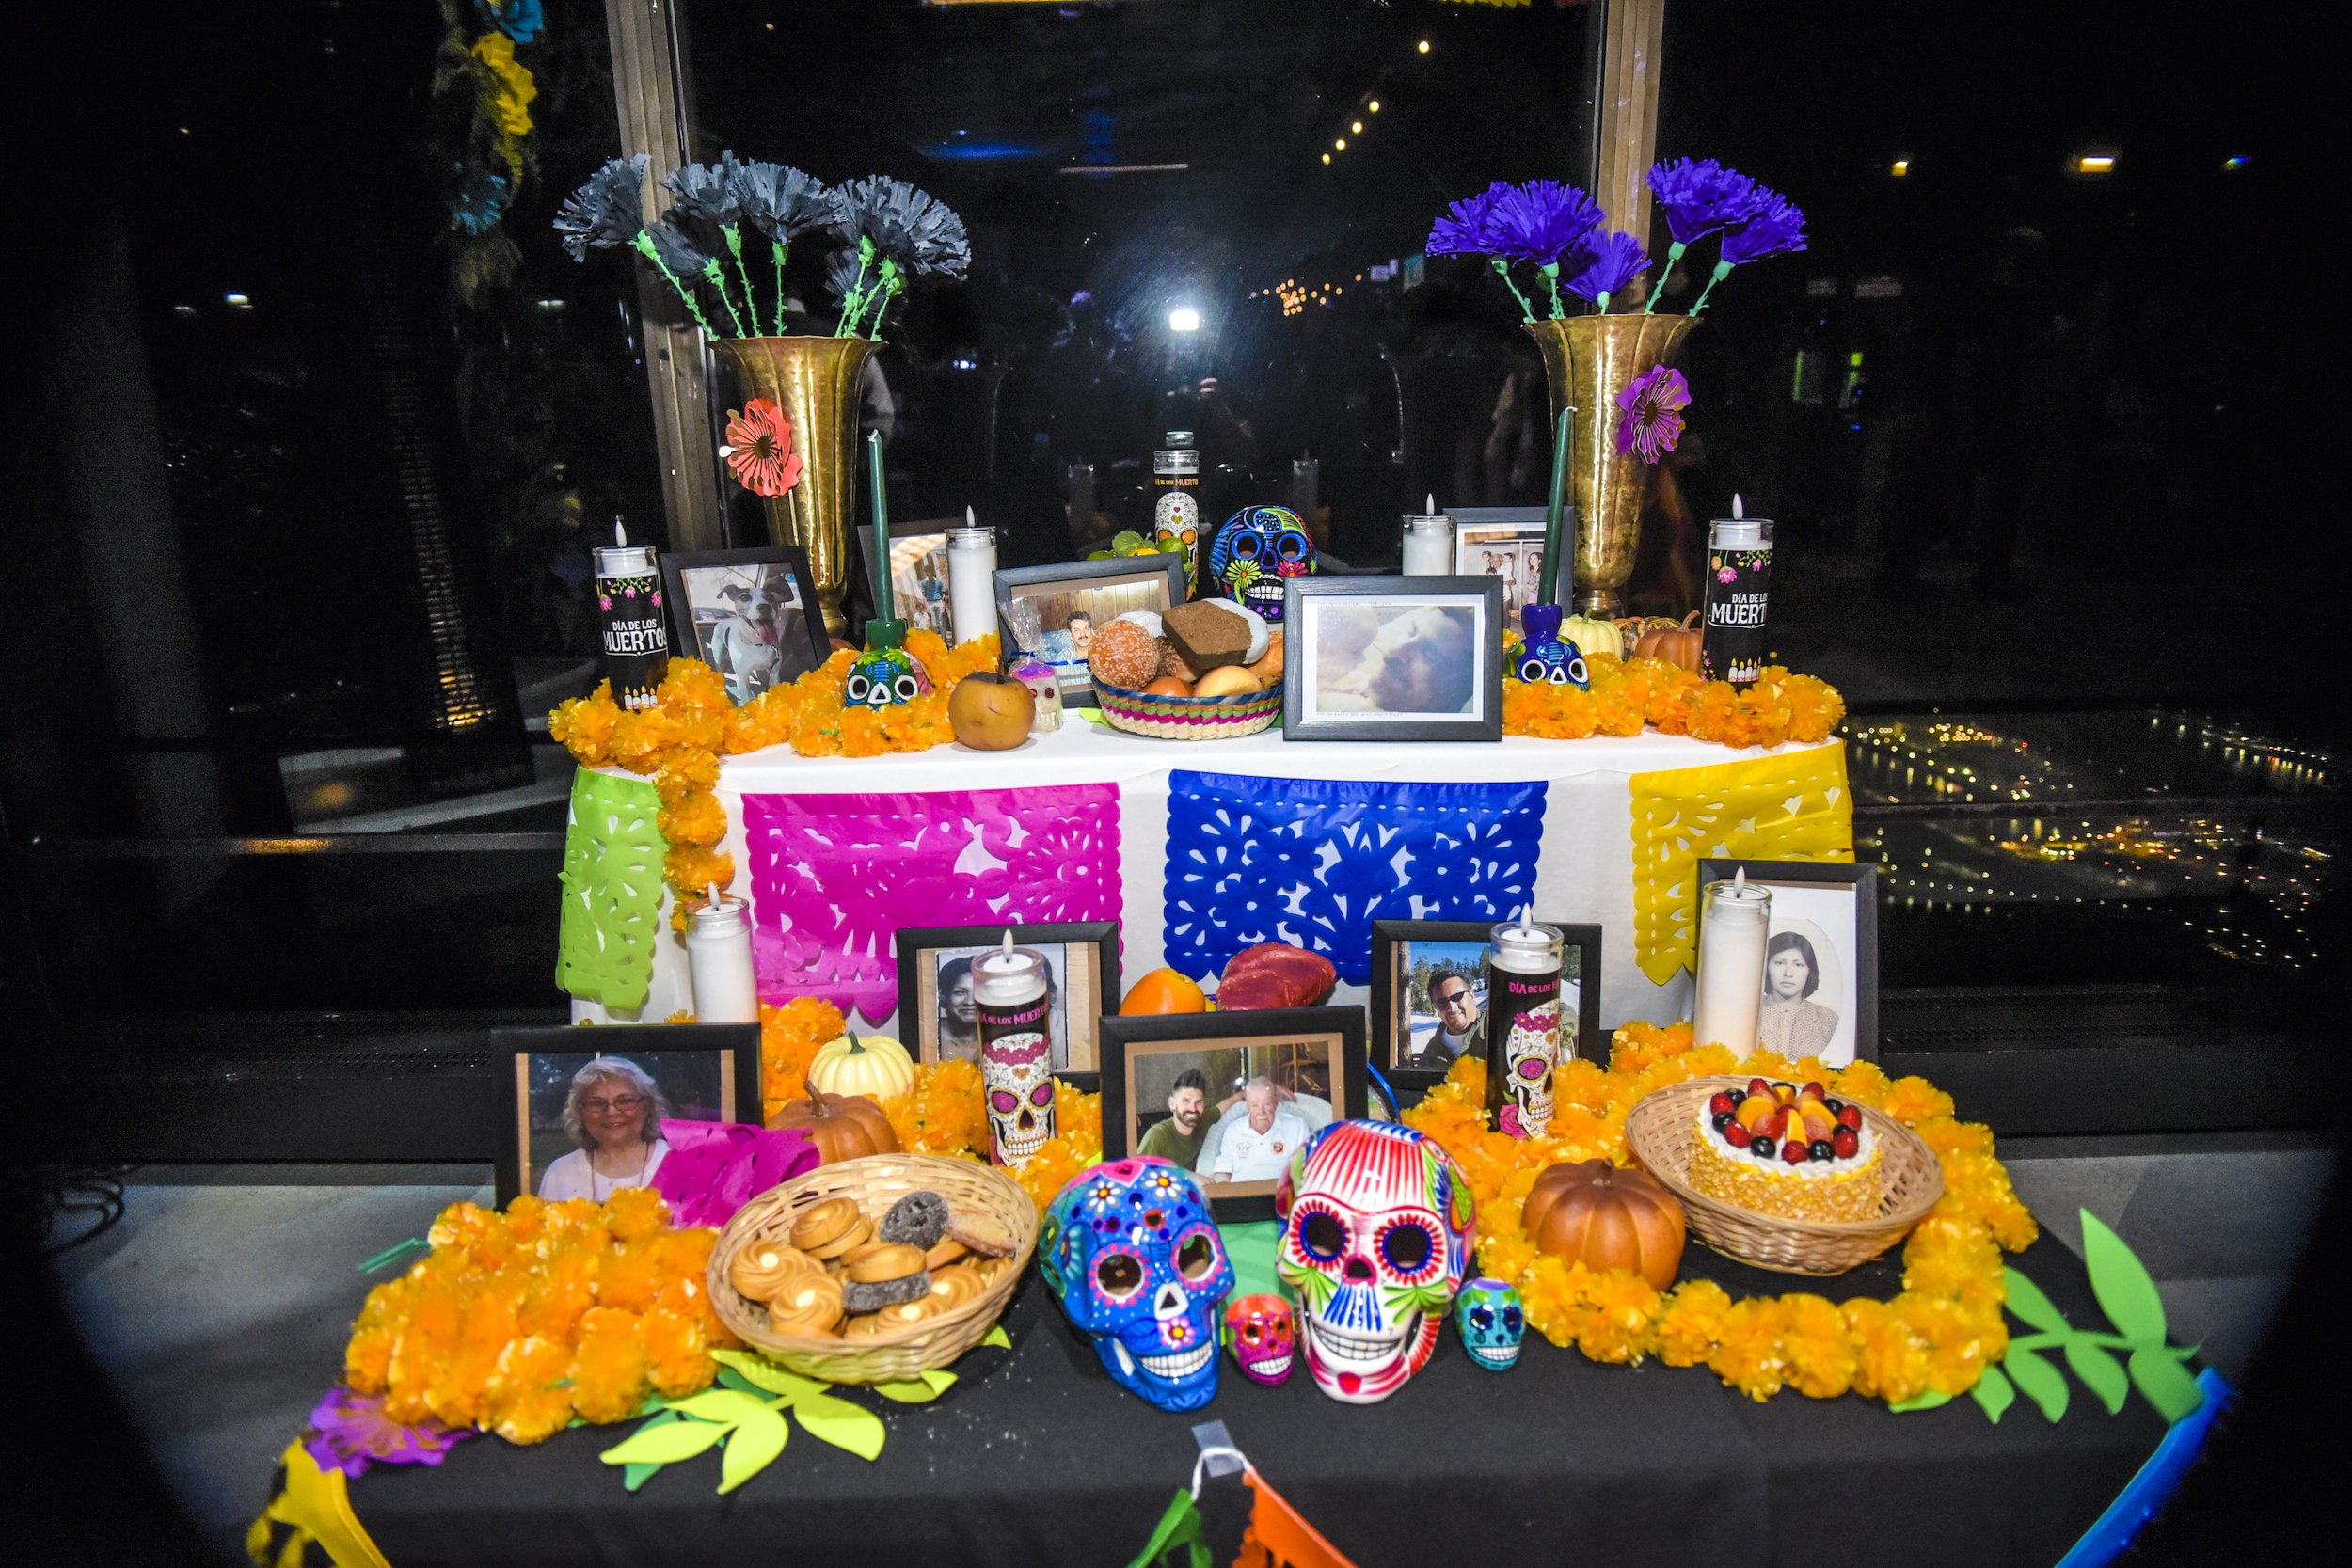 Chicago, celebra Día de los Muertos con calaveras decorativas